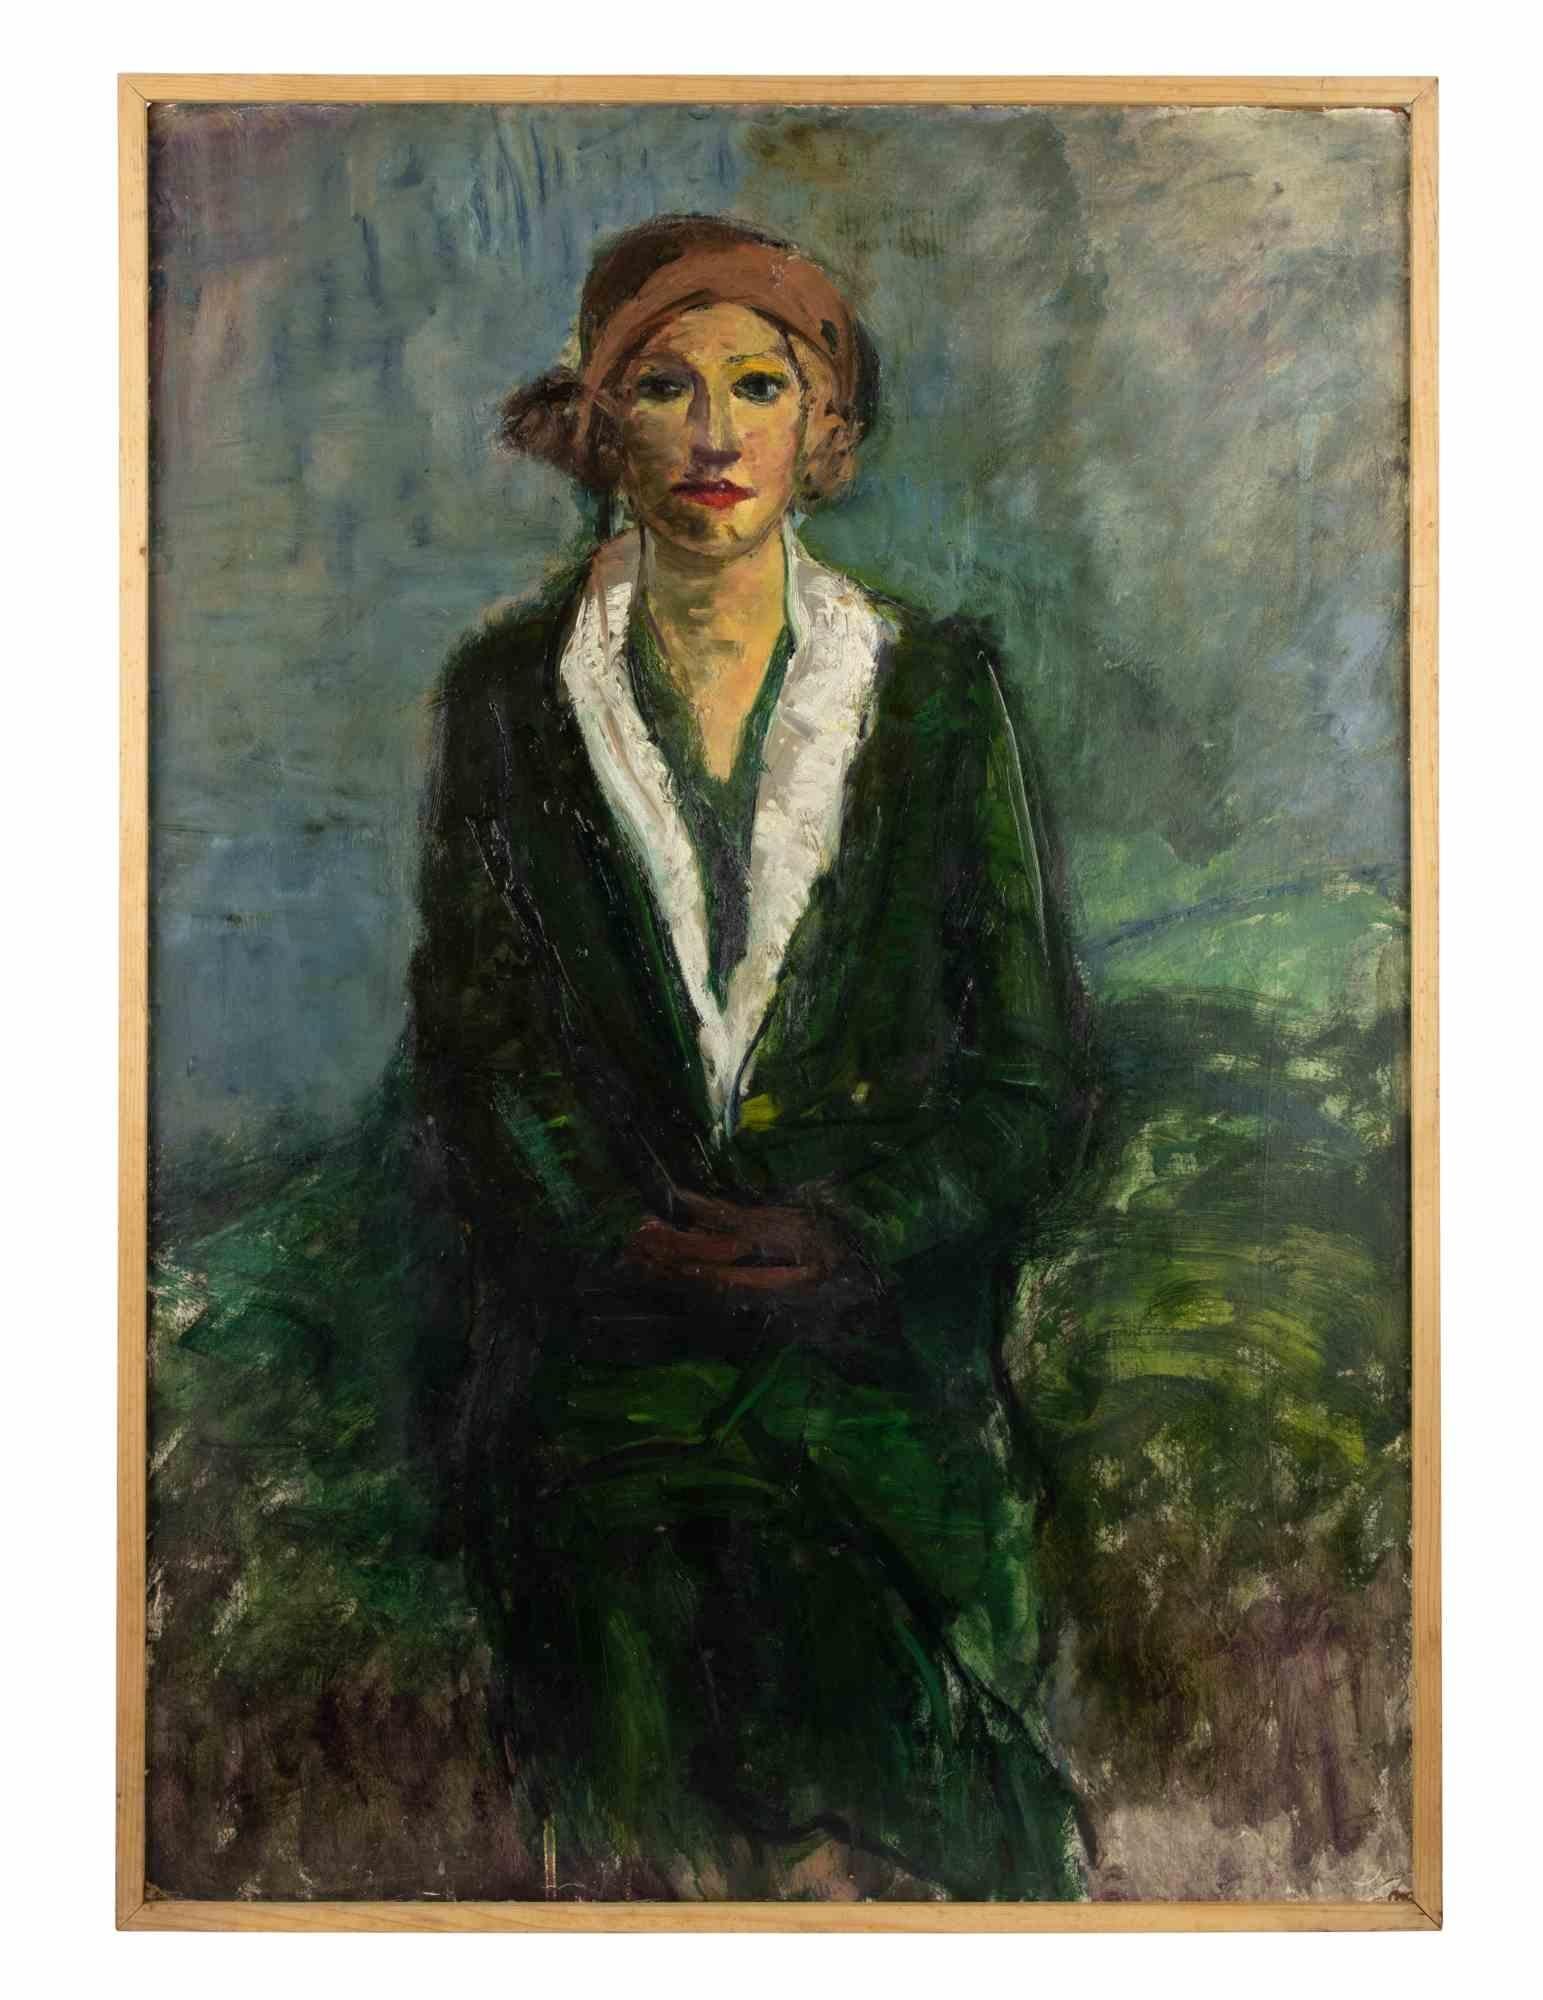 Portrait of Woman ist ein Original-Kunstwerk des italienischen Künstlers  Antonio Feltrinelli in den 1930er Jahren.

Original Öl auf Sperrholz.

Schönes und repräsentatives Kunstwerk einer weiblichen Figur.


Inklusive Rahmen: 106 x 75 cm

Antonio